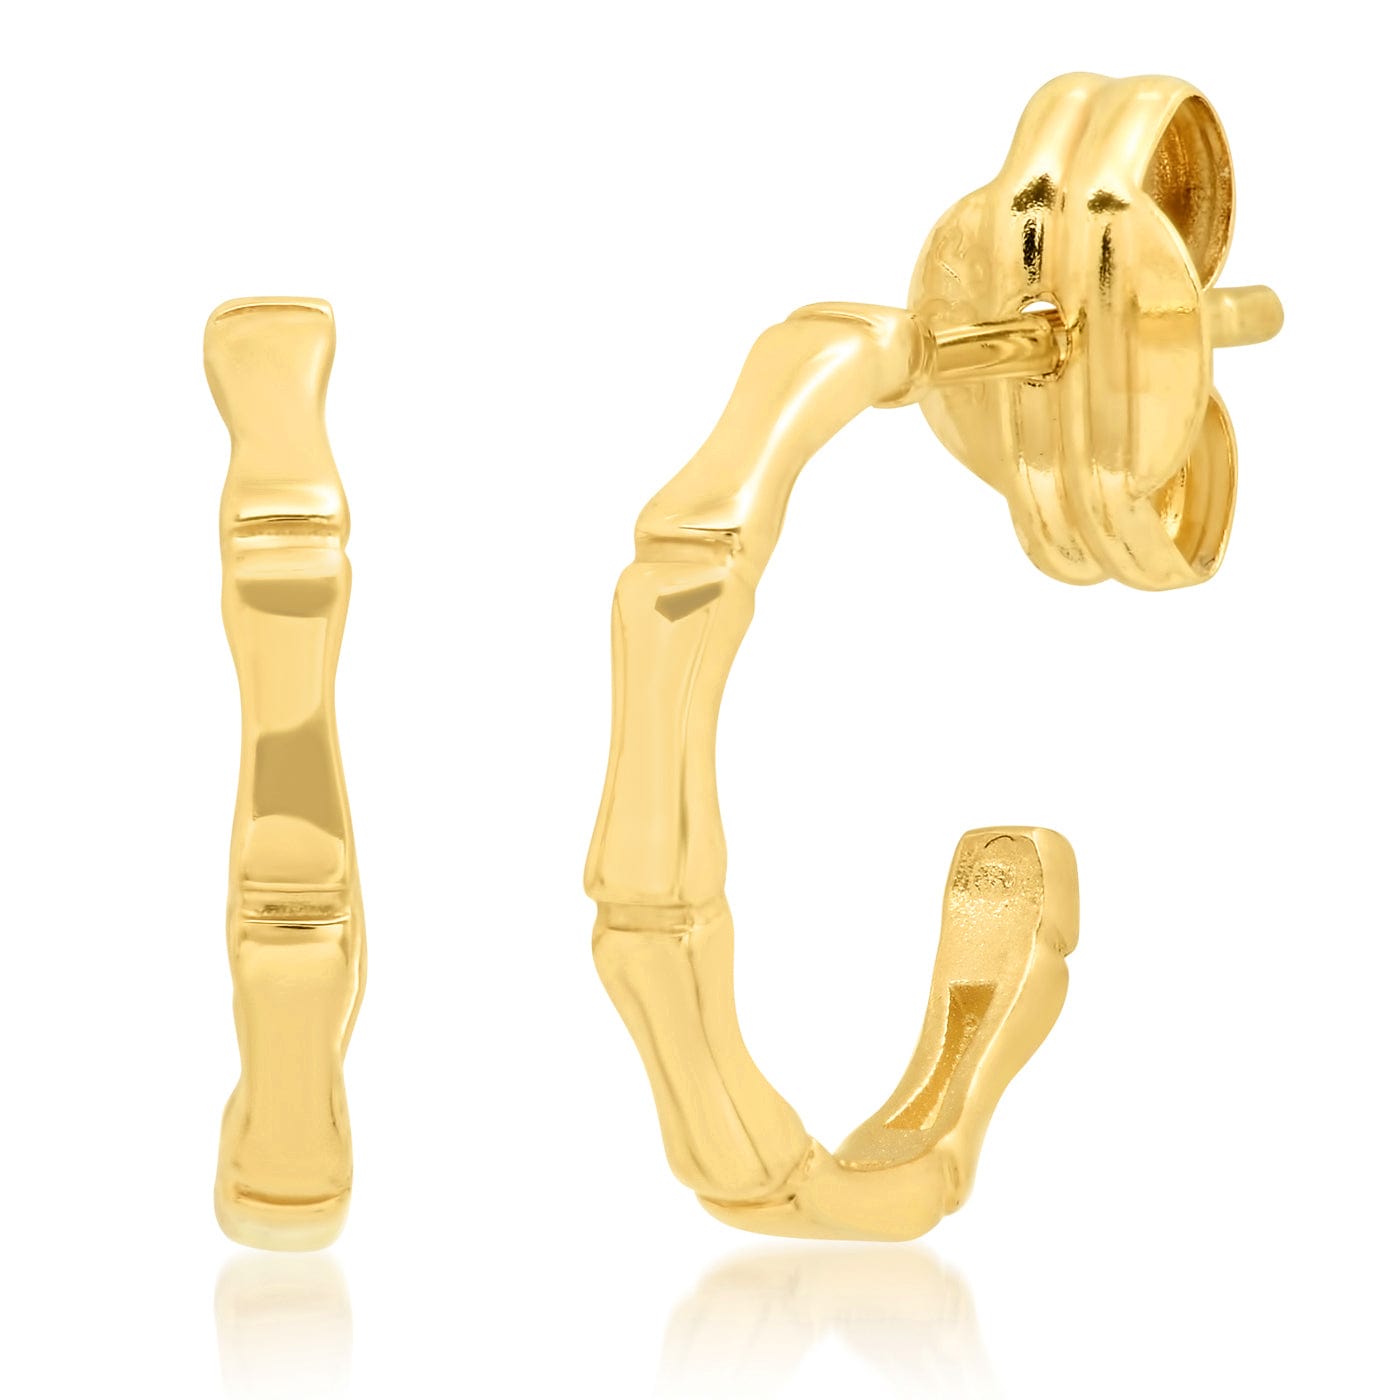 TAI JEWELRY Earrings 14k Gold 14k Mini Bamboo Hoops